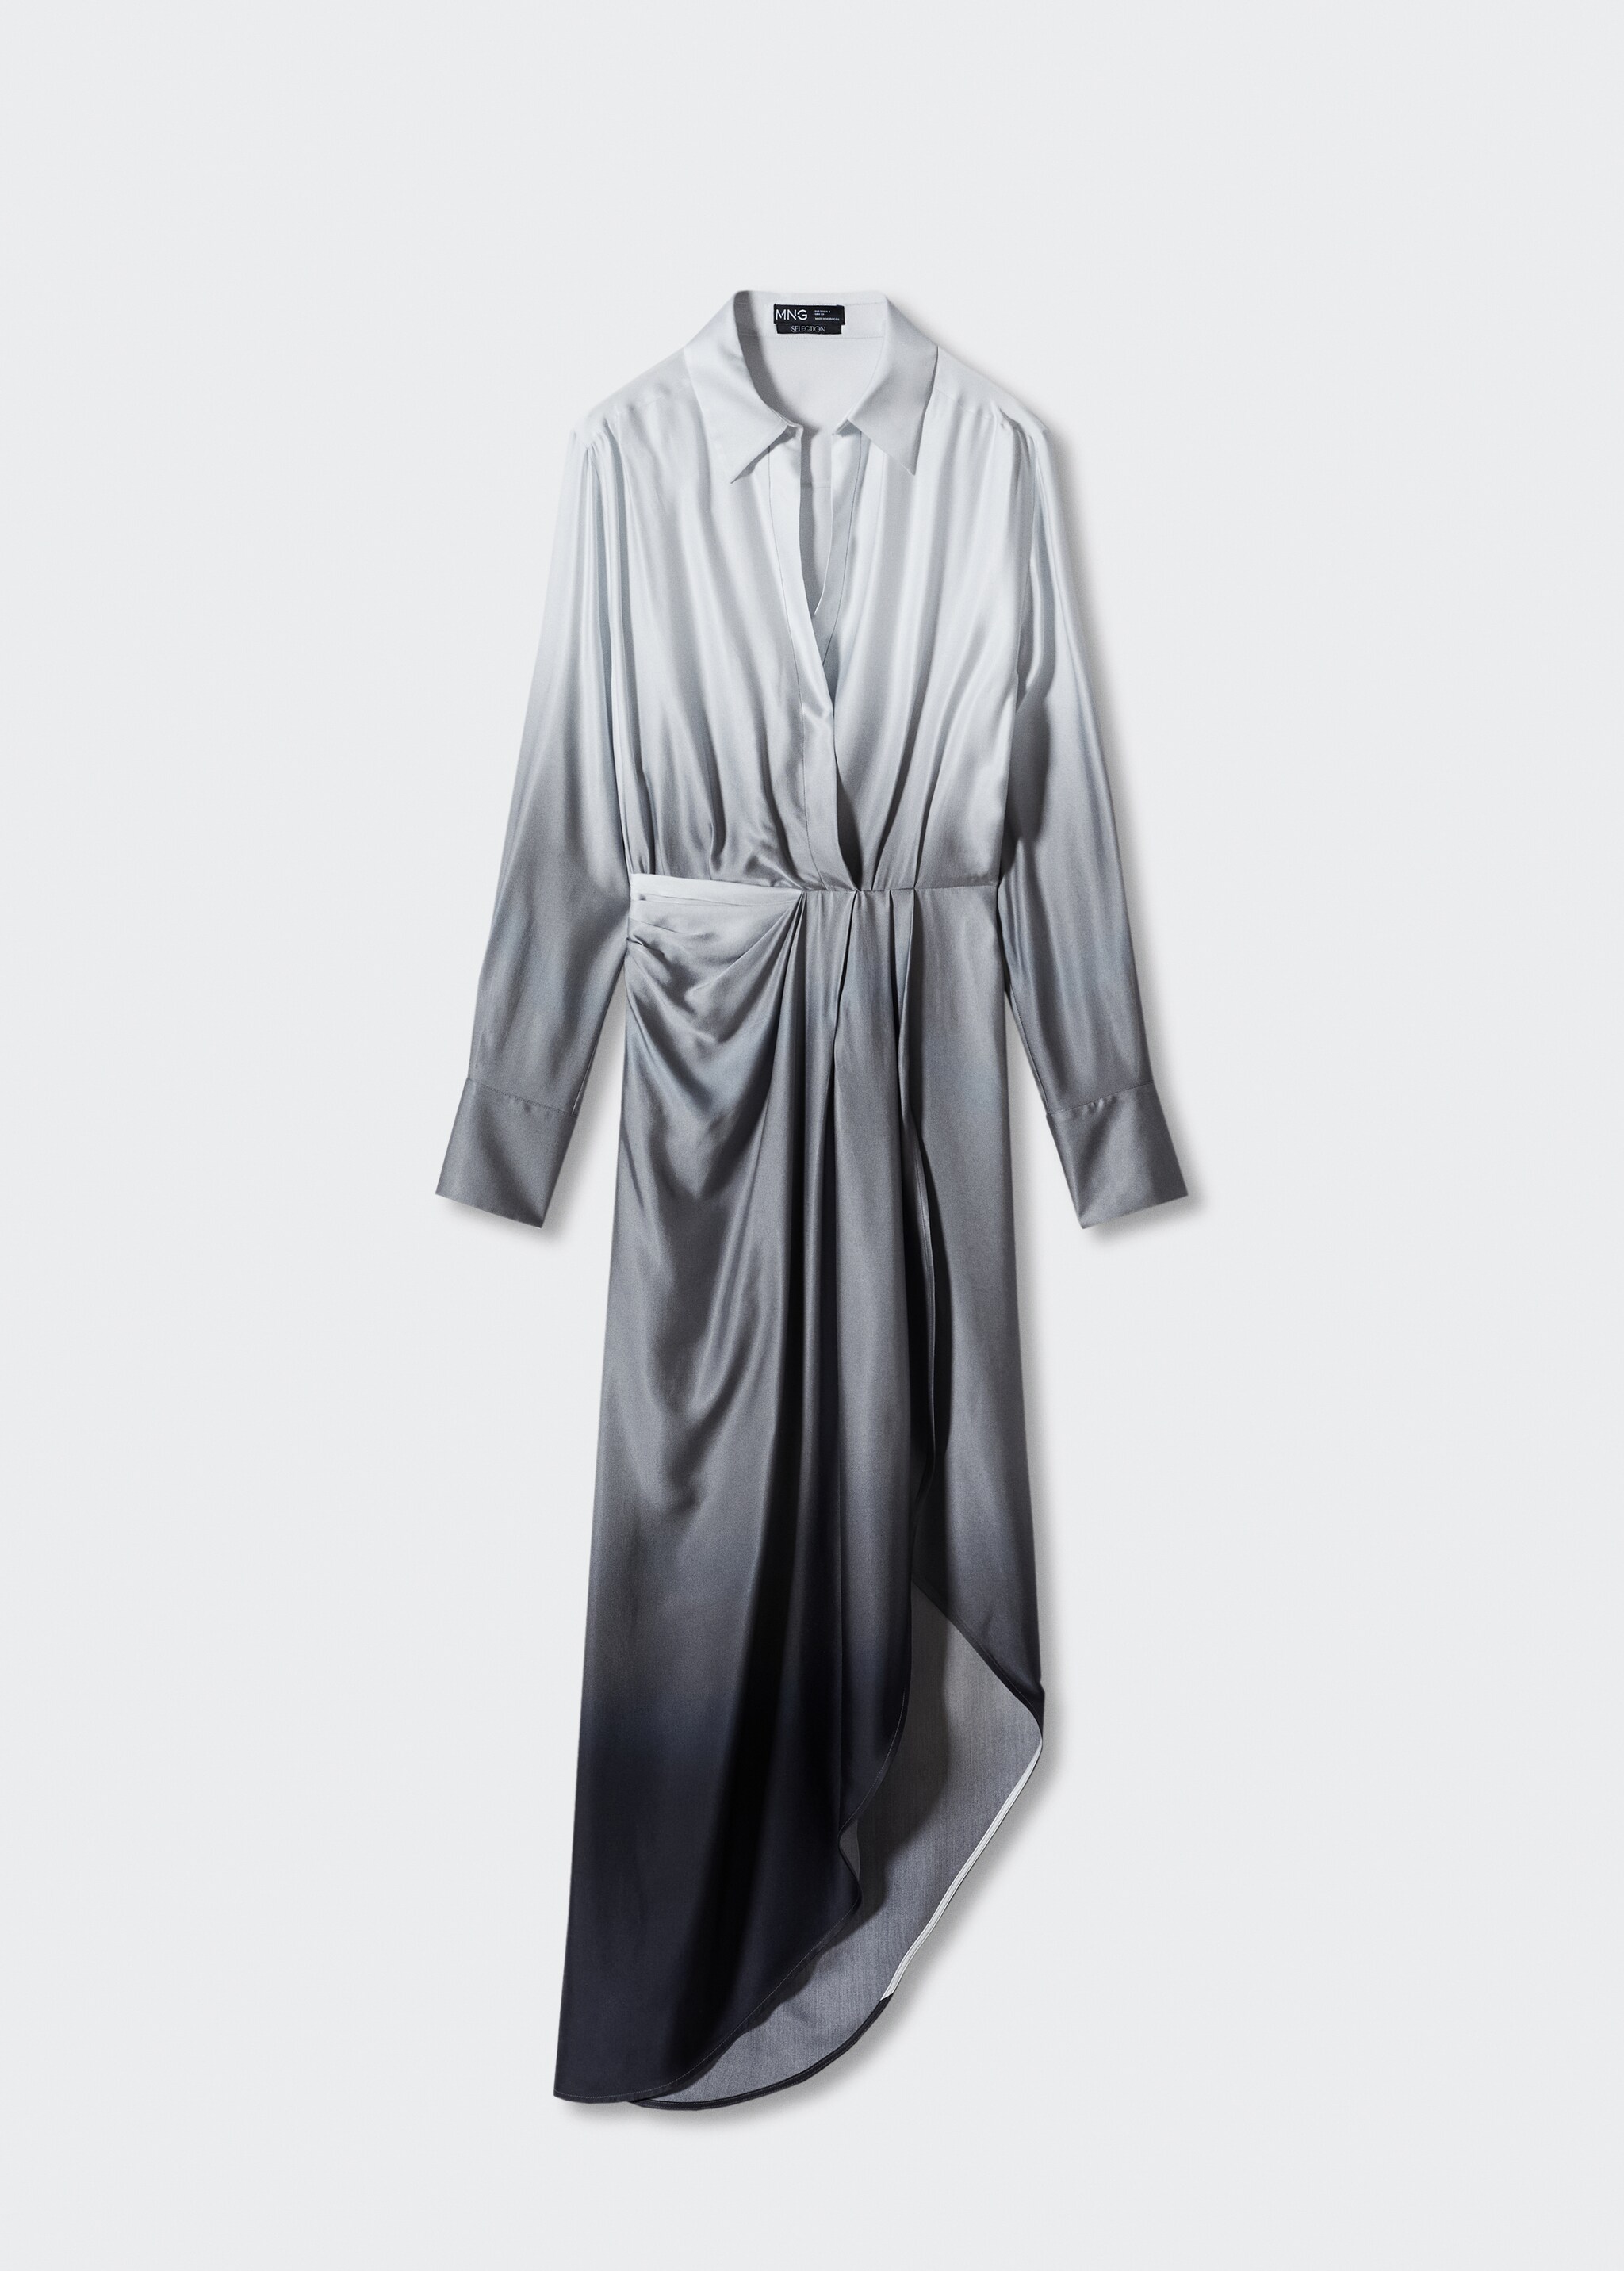 Φόρεμα σεμιζιέ όψη tie-dye - Προϊόν χωρίς μοντέλο